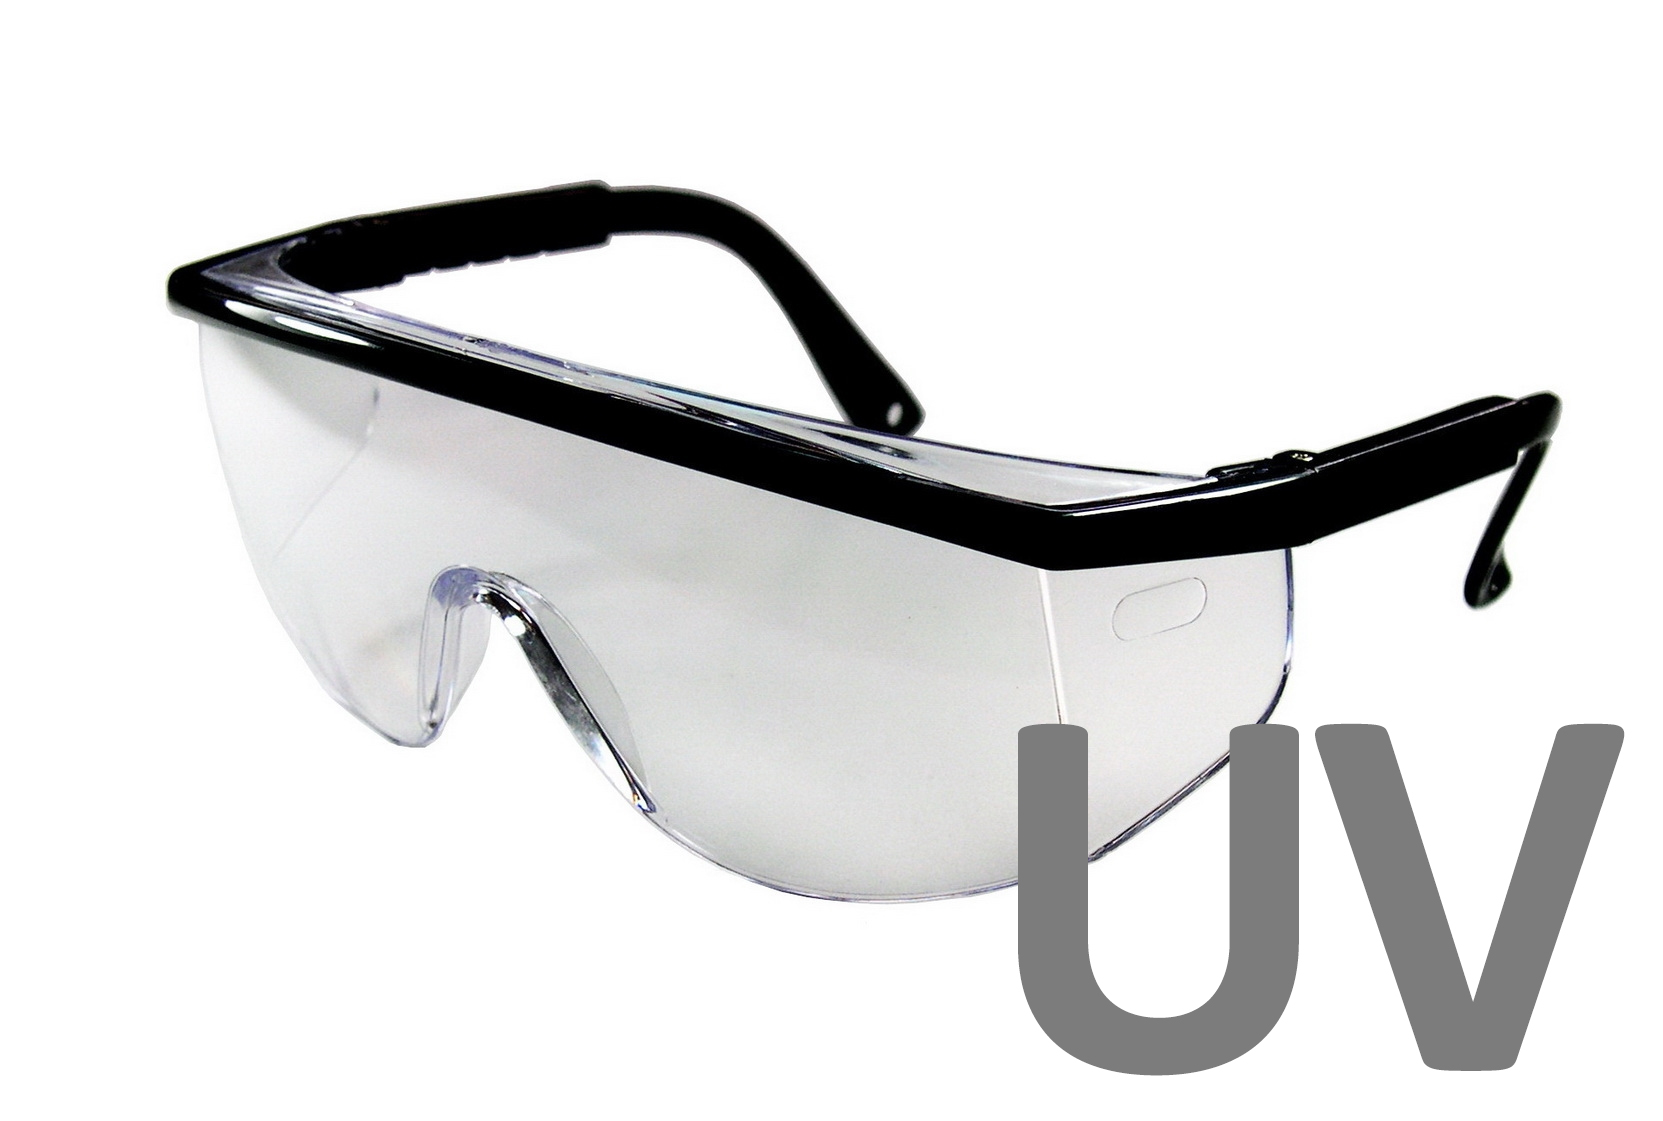 Laborbrille Modell "Visio" mit UV-Schutz